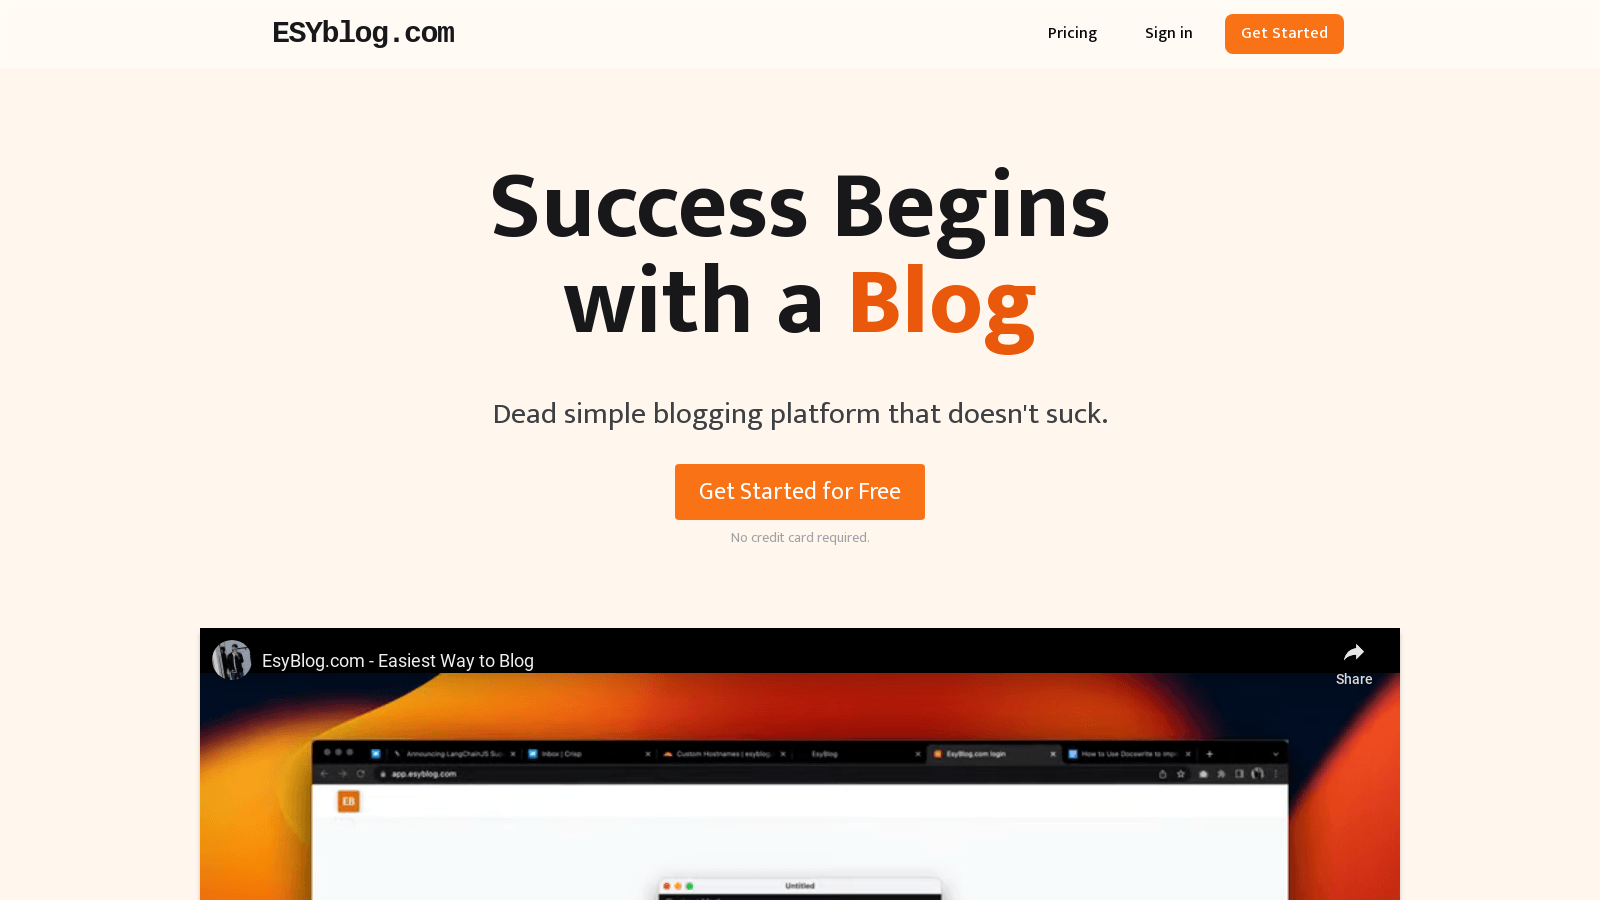 esyblog.com